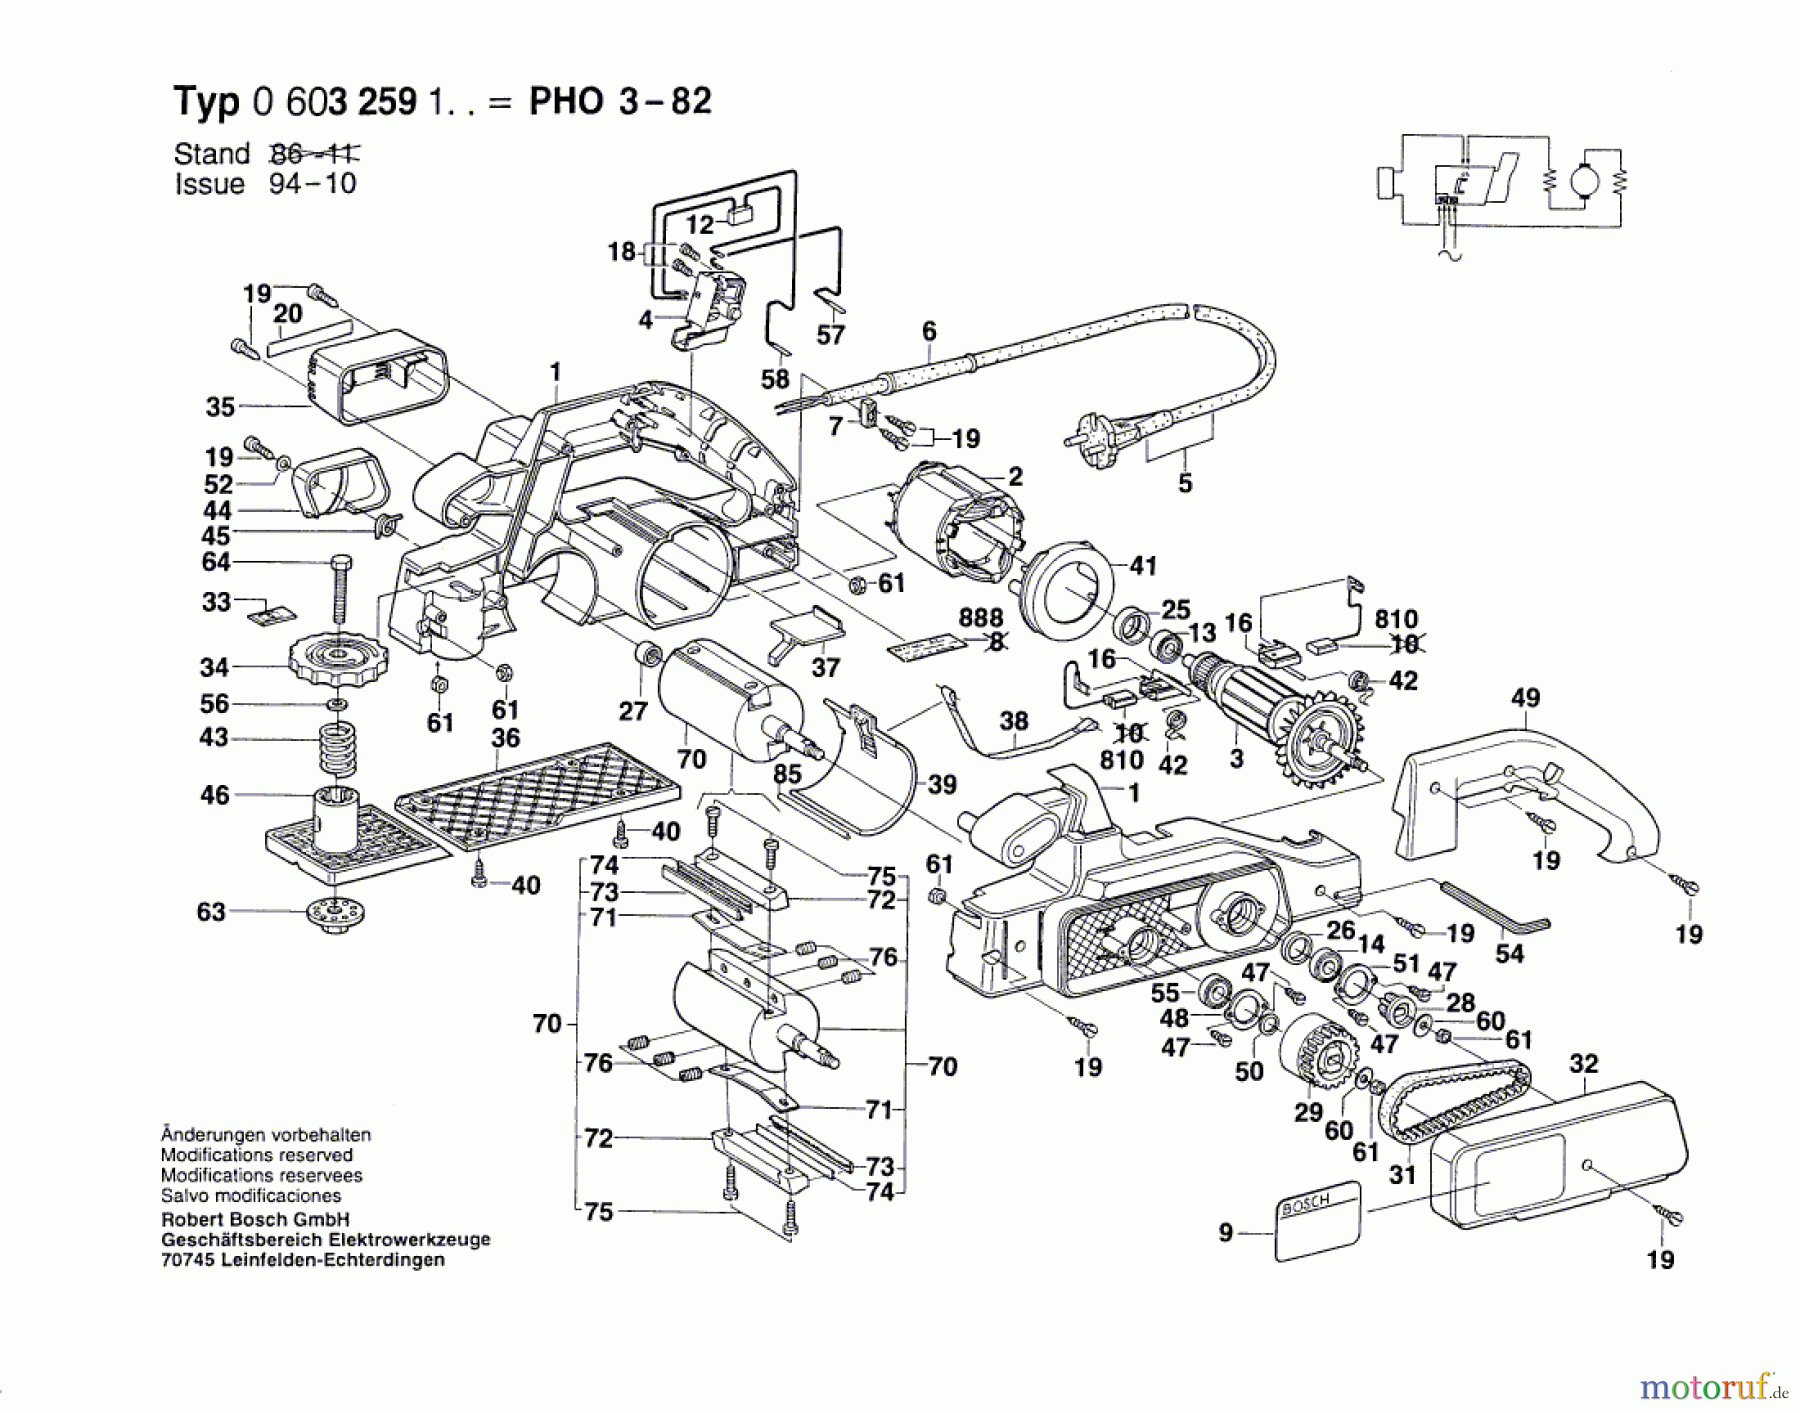  Bosch Werkzeug Hw-Handhobel PHO 3-82 Seite 1